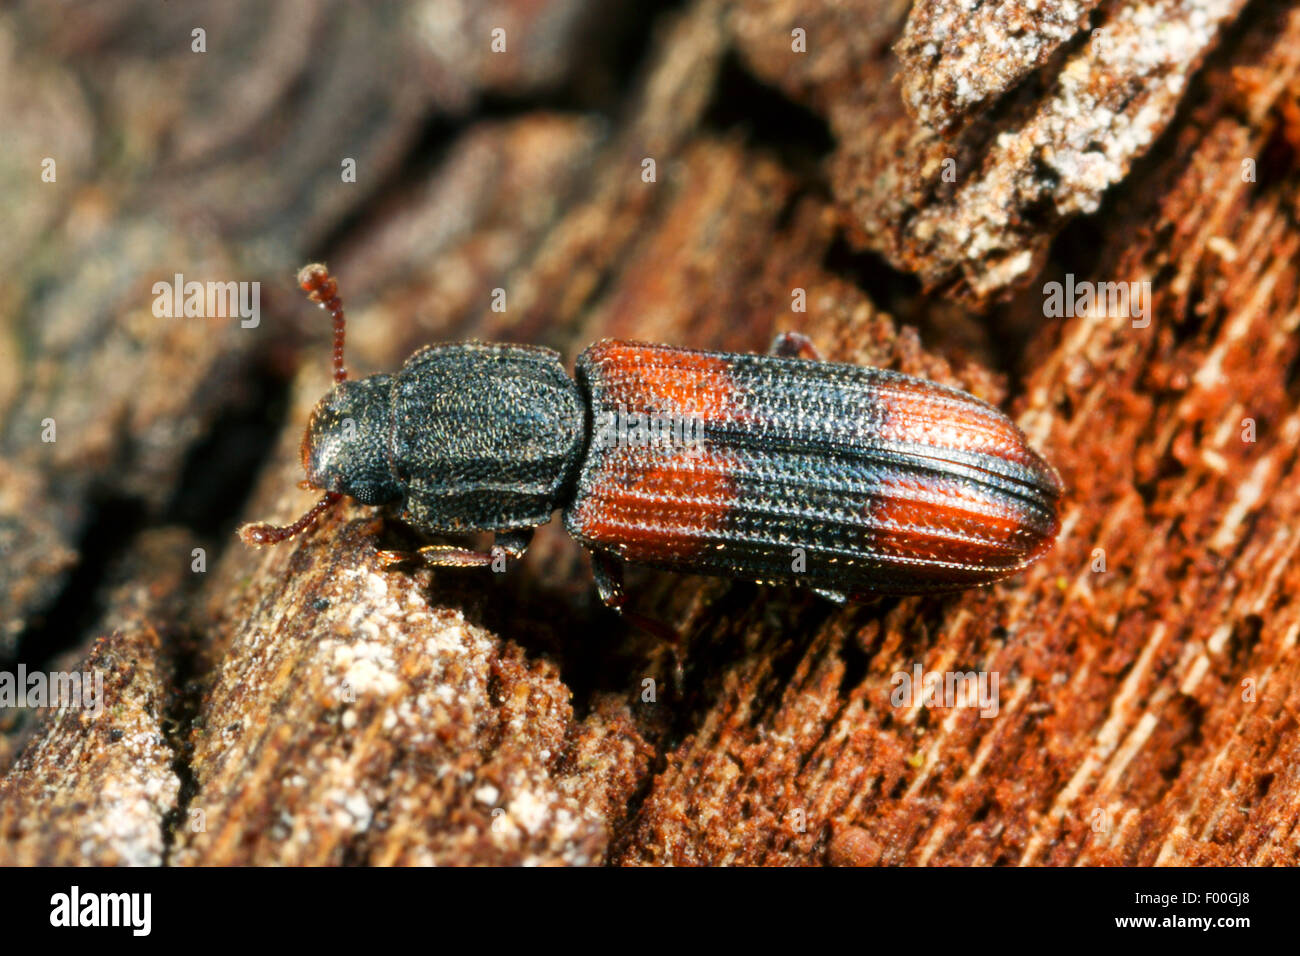 Saddle-backed Bitoma, Wedge-shaped Beetle (Bitoma crenata, Ditoma crenata), on deadwood, Germany Stock Photo